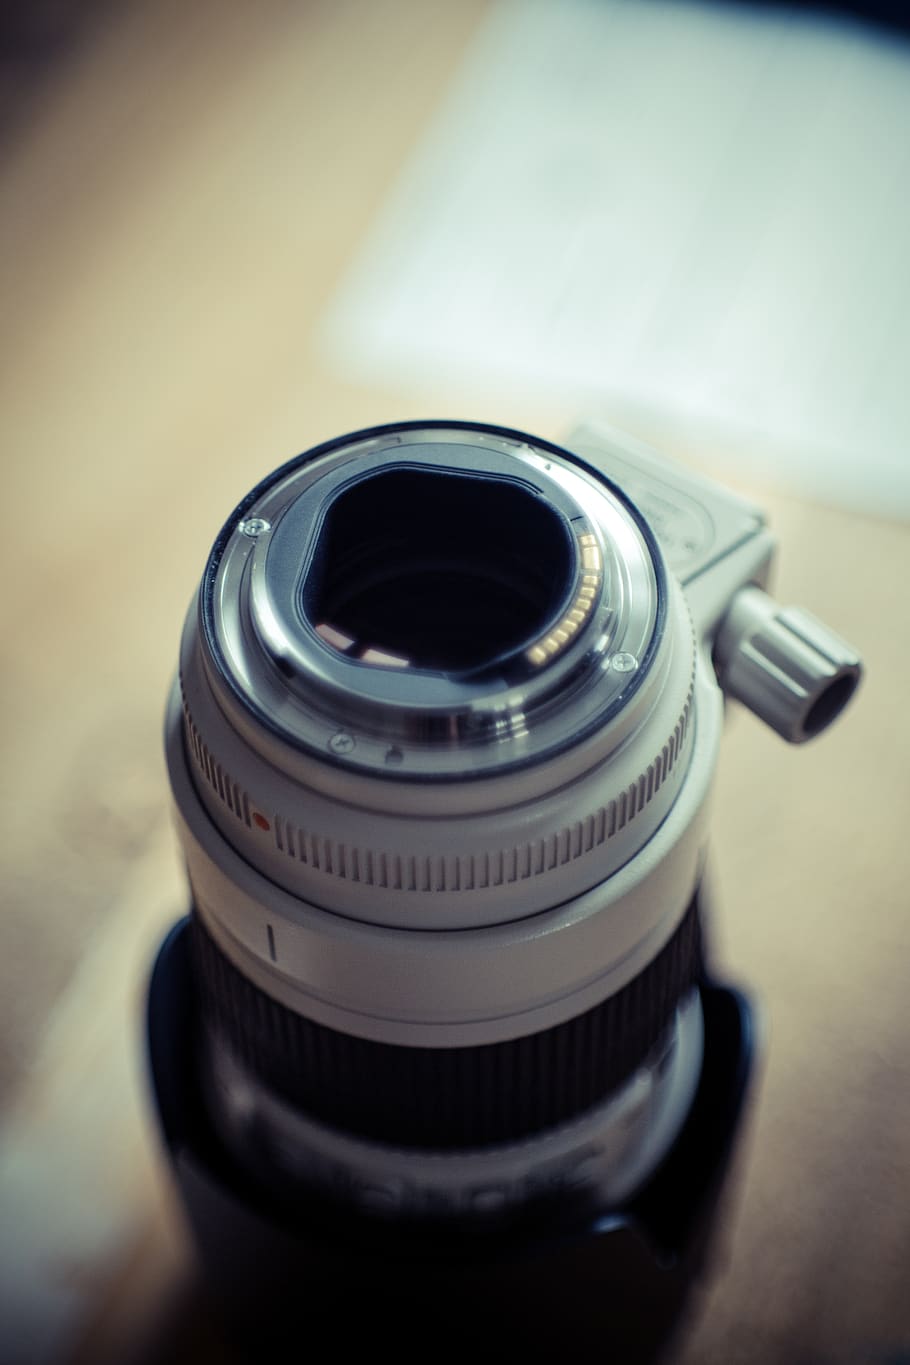 cámara, lente, negro, plateado, fotografía, desenfoque, temas de fotografía, tecnología, cámara - equipo fotográfico, lente - instrumento óptico